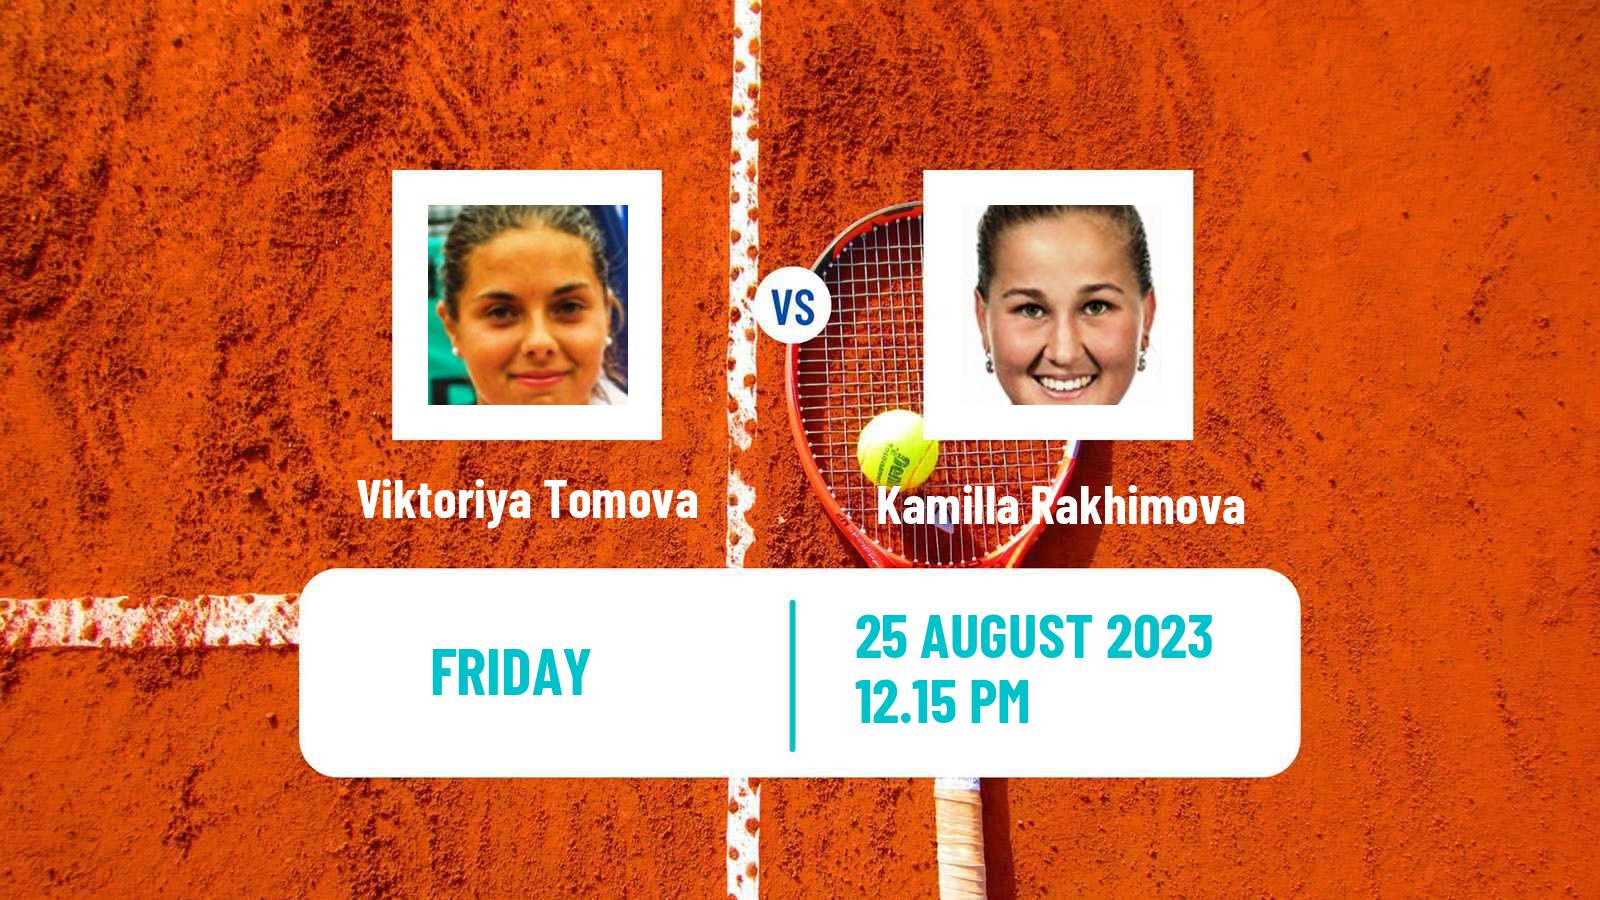 Tennis Chicago Challenger Women Viktoriya Tomova - Kamilla Rakhimova